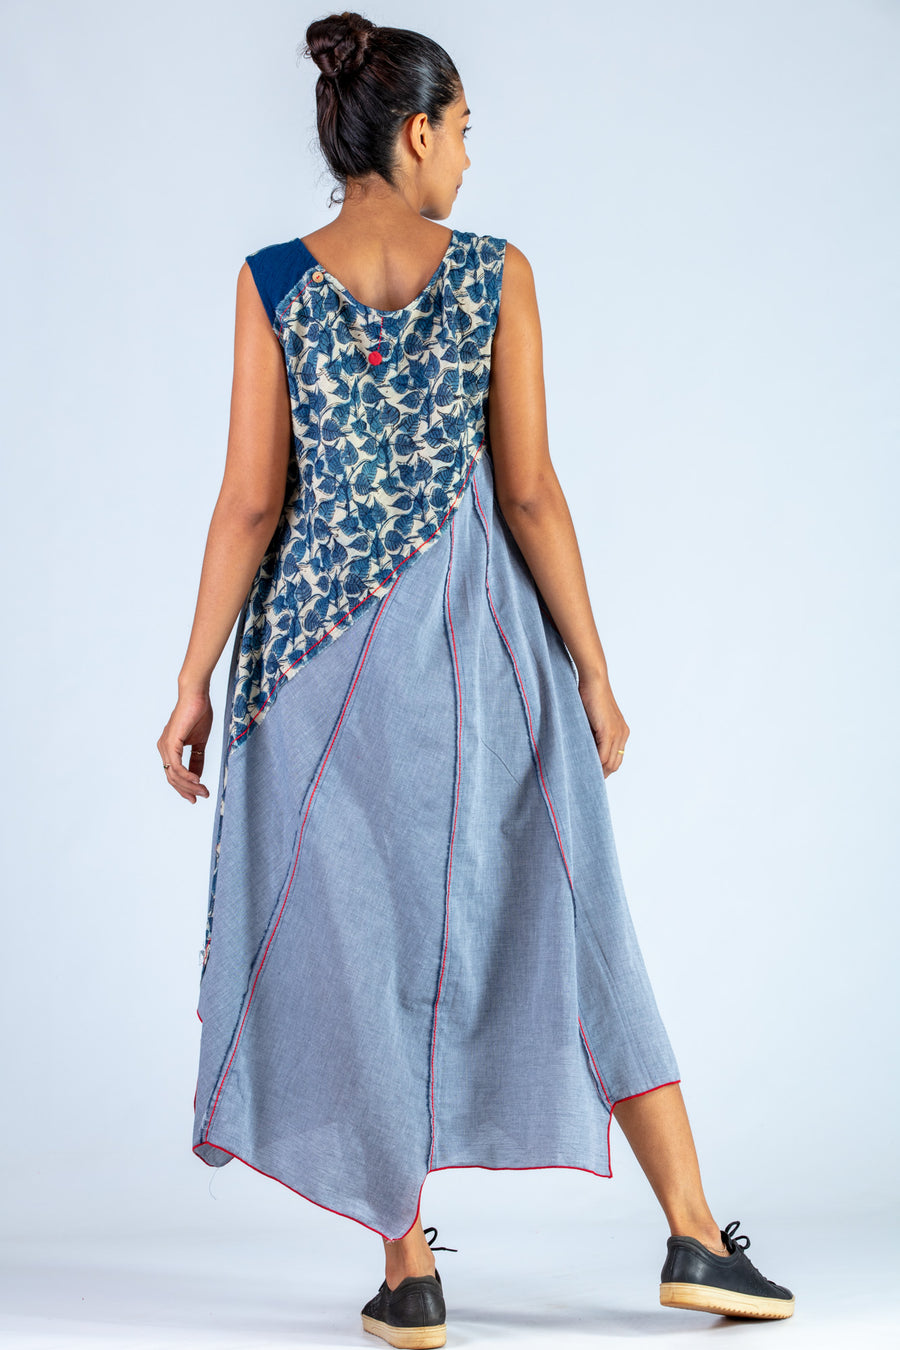 Blue Upcycled Dress - NAISHA - Upasana Design Studio